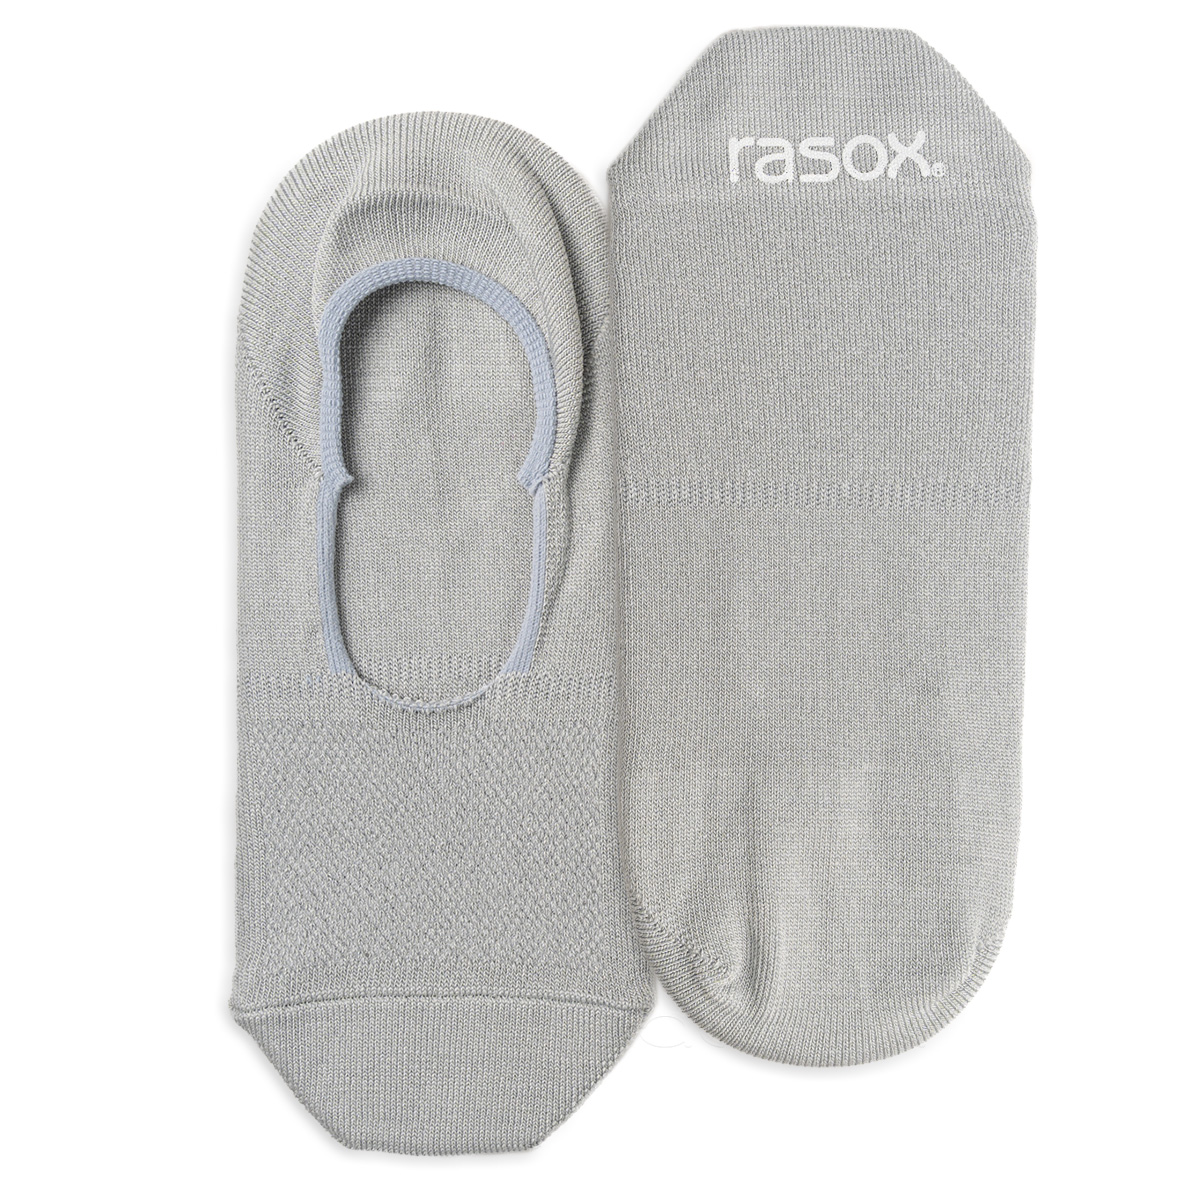 ラソックス 靴下 ファインクールカバー カバーソックス フットカバー rasox メンズ レディース